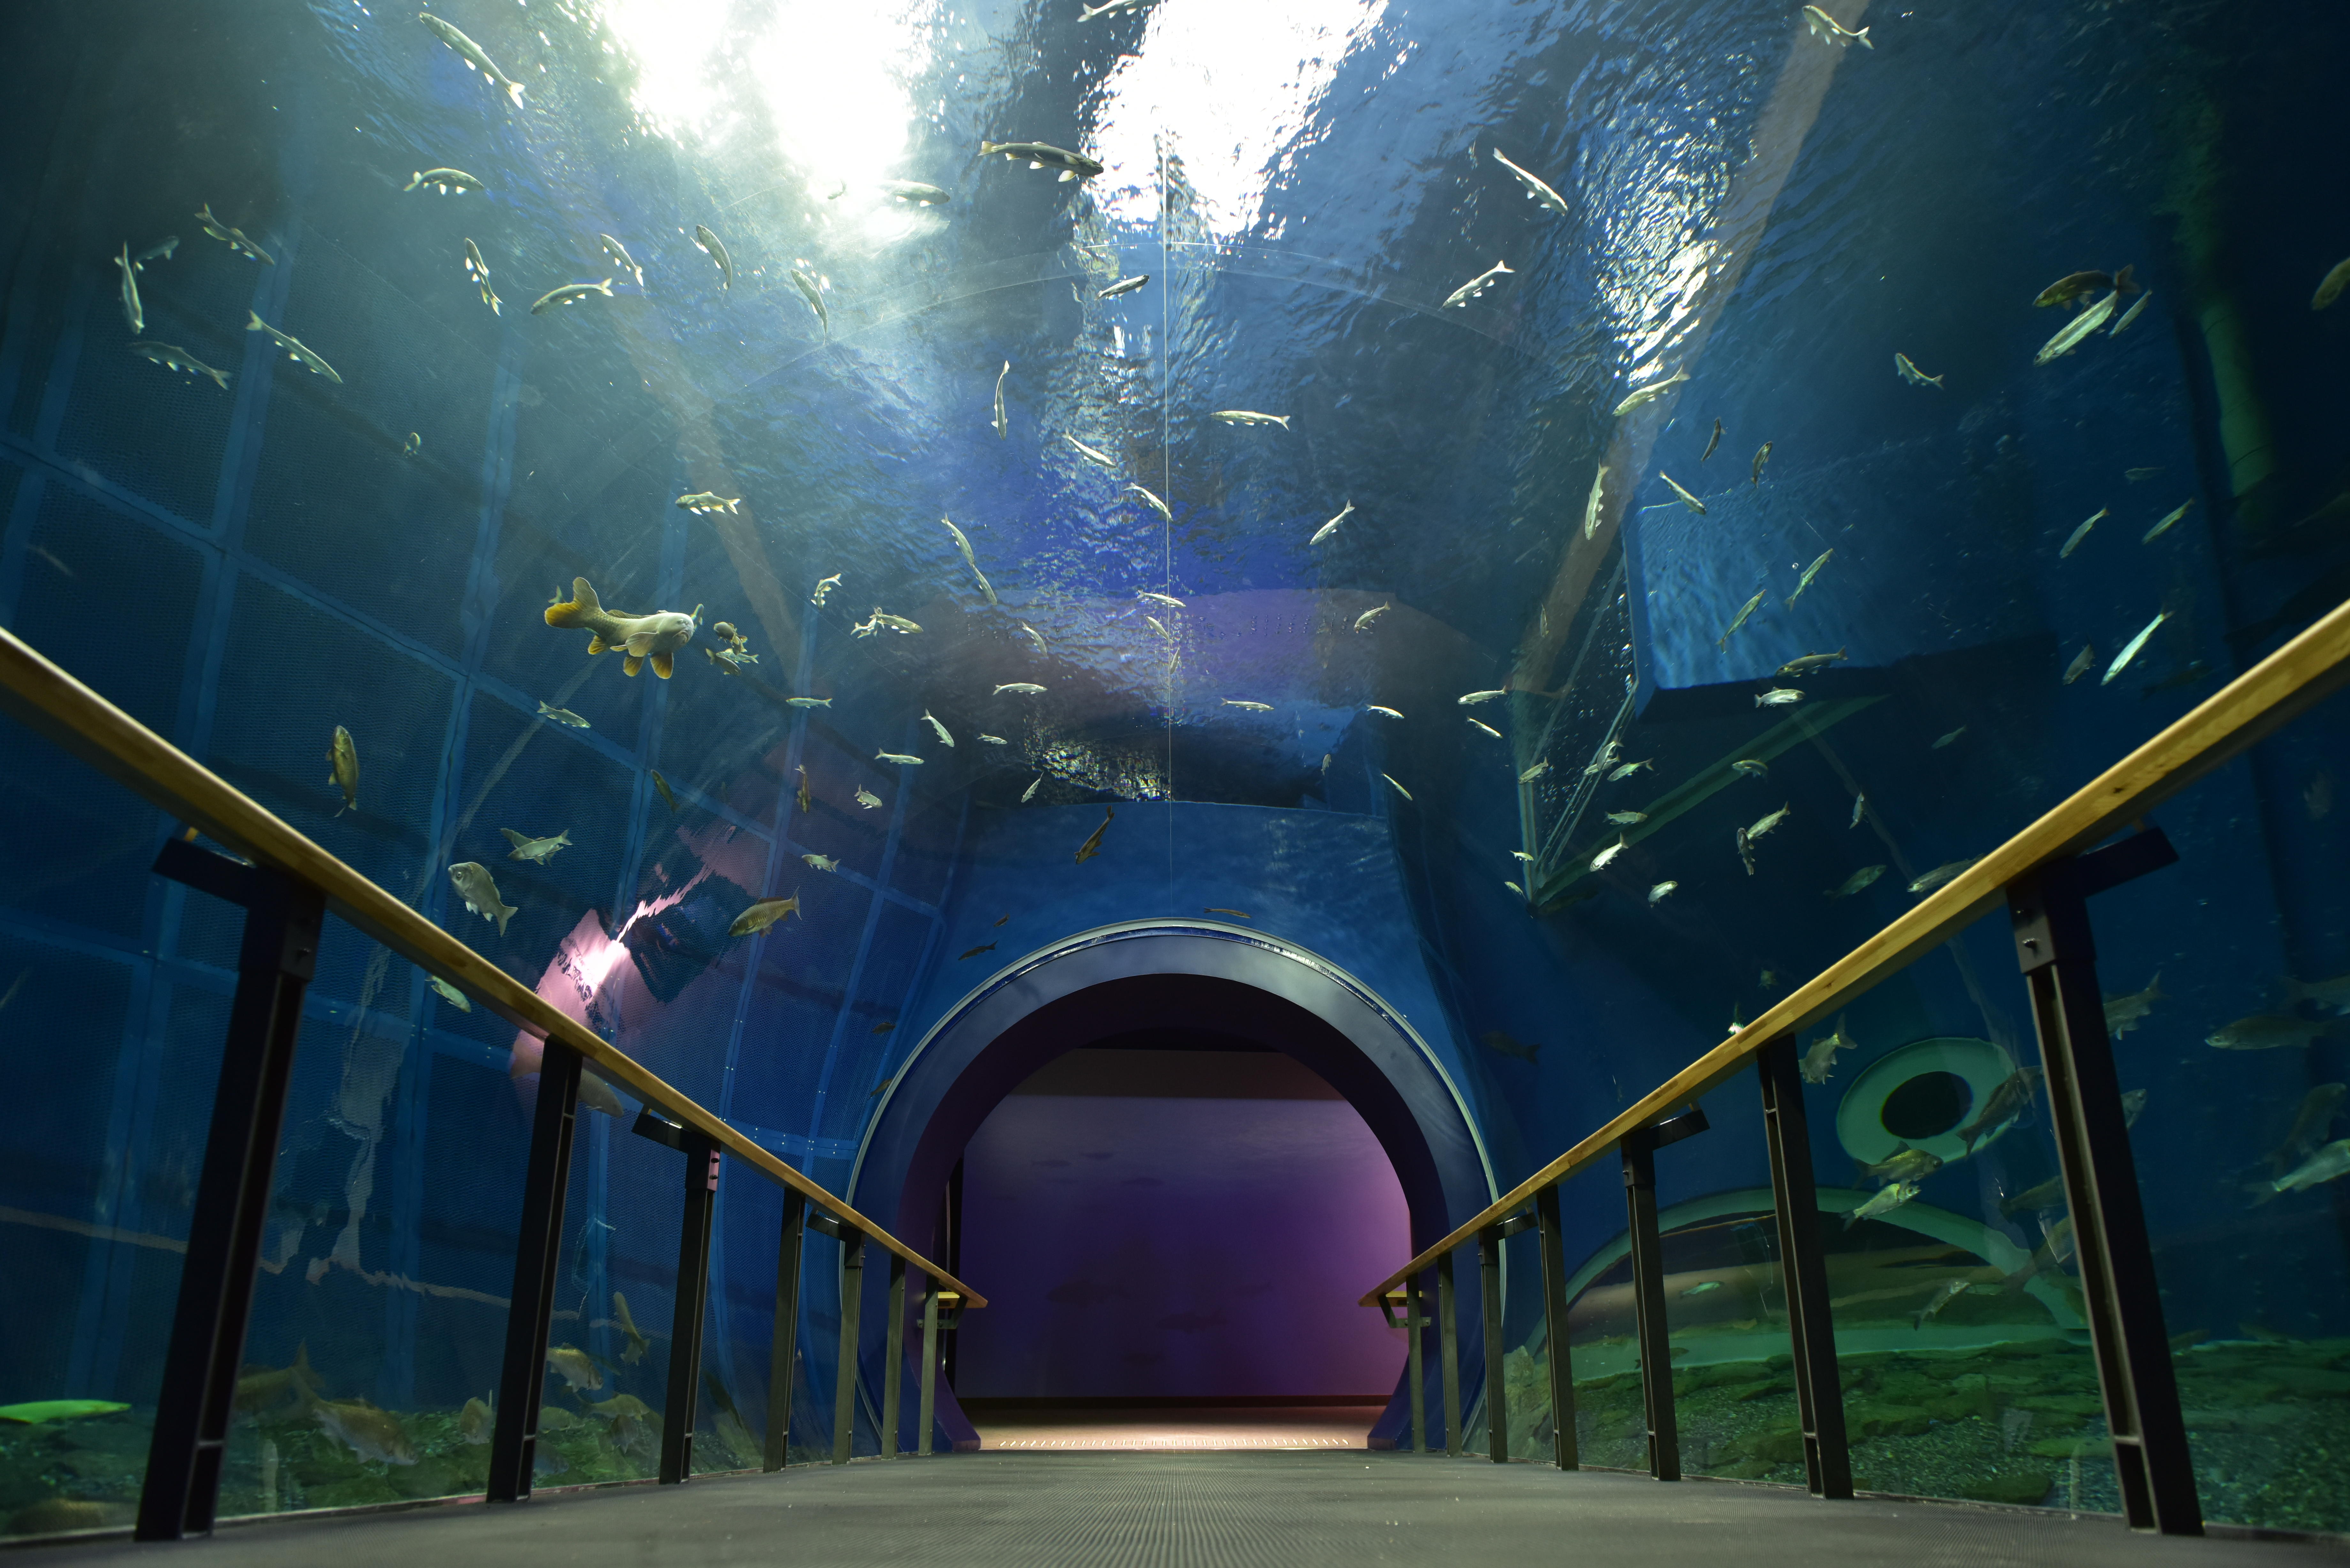 琵琶湖博物館が動画 トンネル水槽をゆったり泳ぐ魚たち を公開 滋賀県立琵琶湖博物館